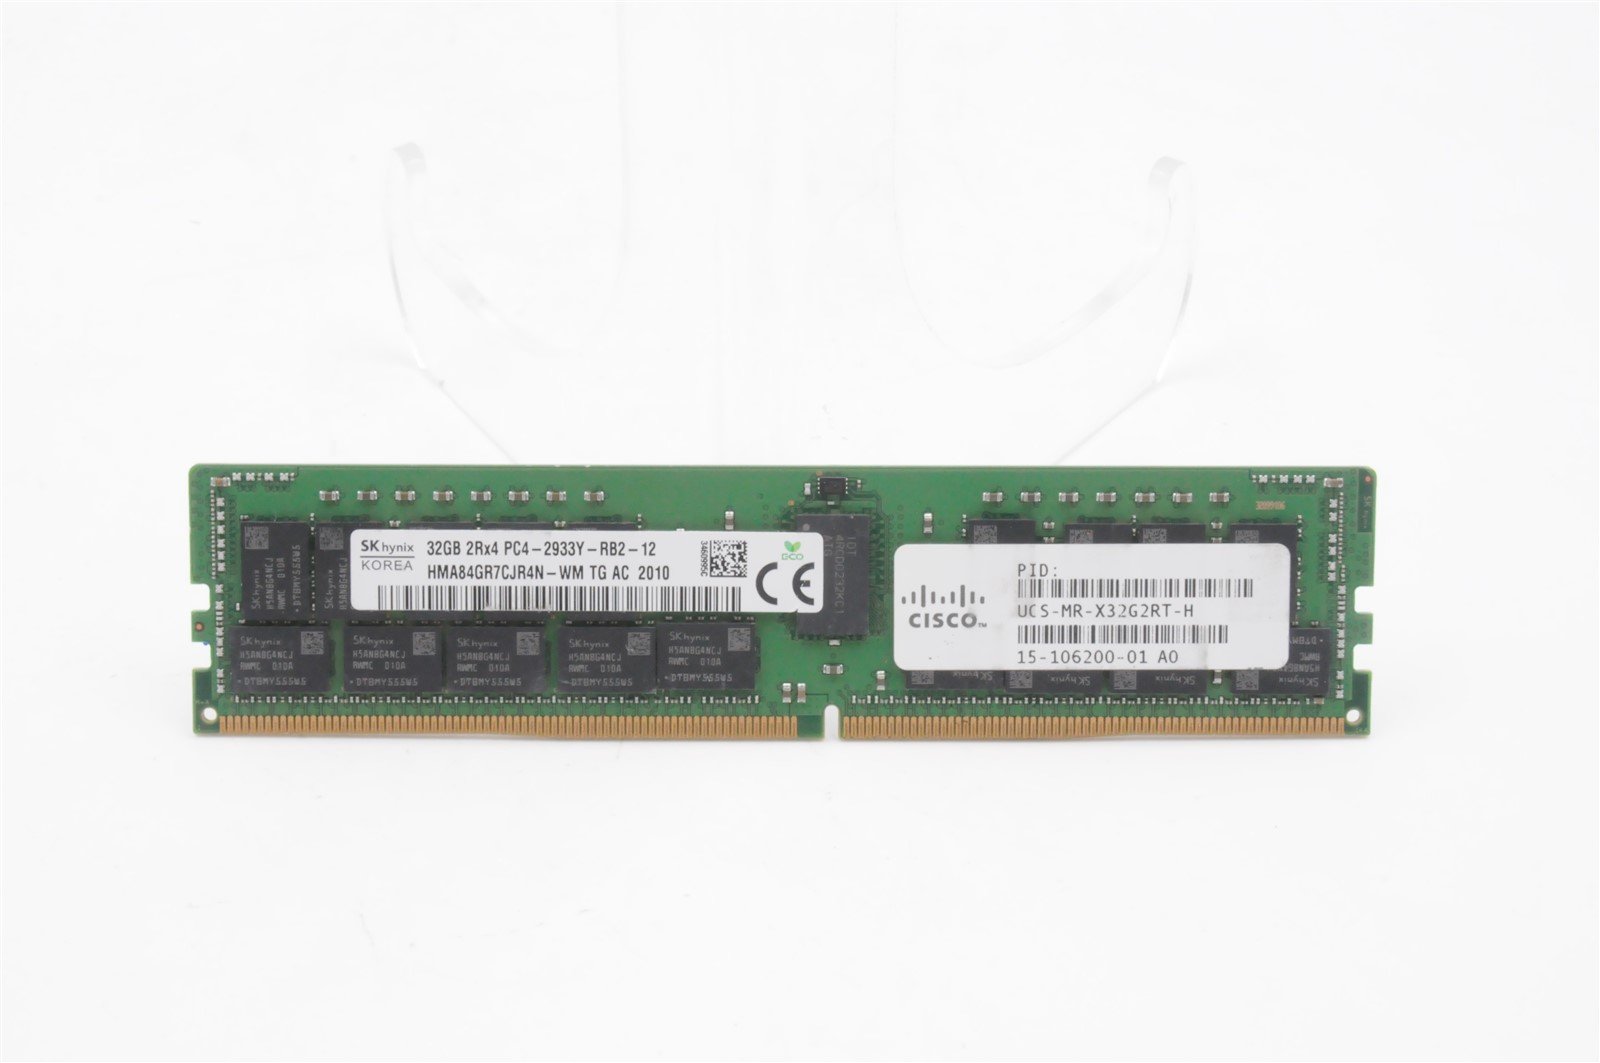 15-106200-01 UCS-MR-X32G2RT-H CISCO 32GB 2RX4 PC4-2933Y MEMORY MODULE (1x32GB)